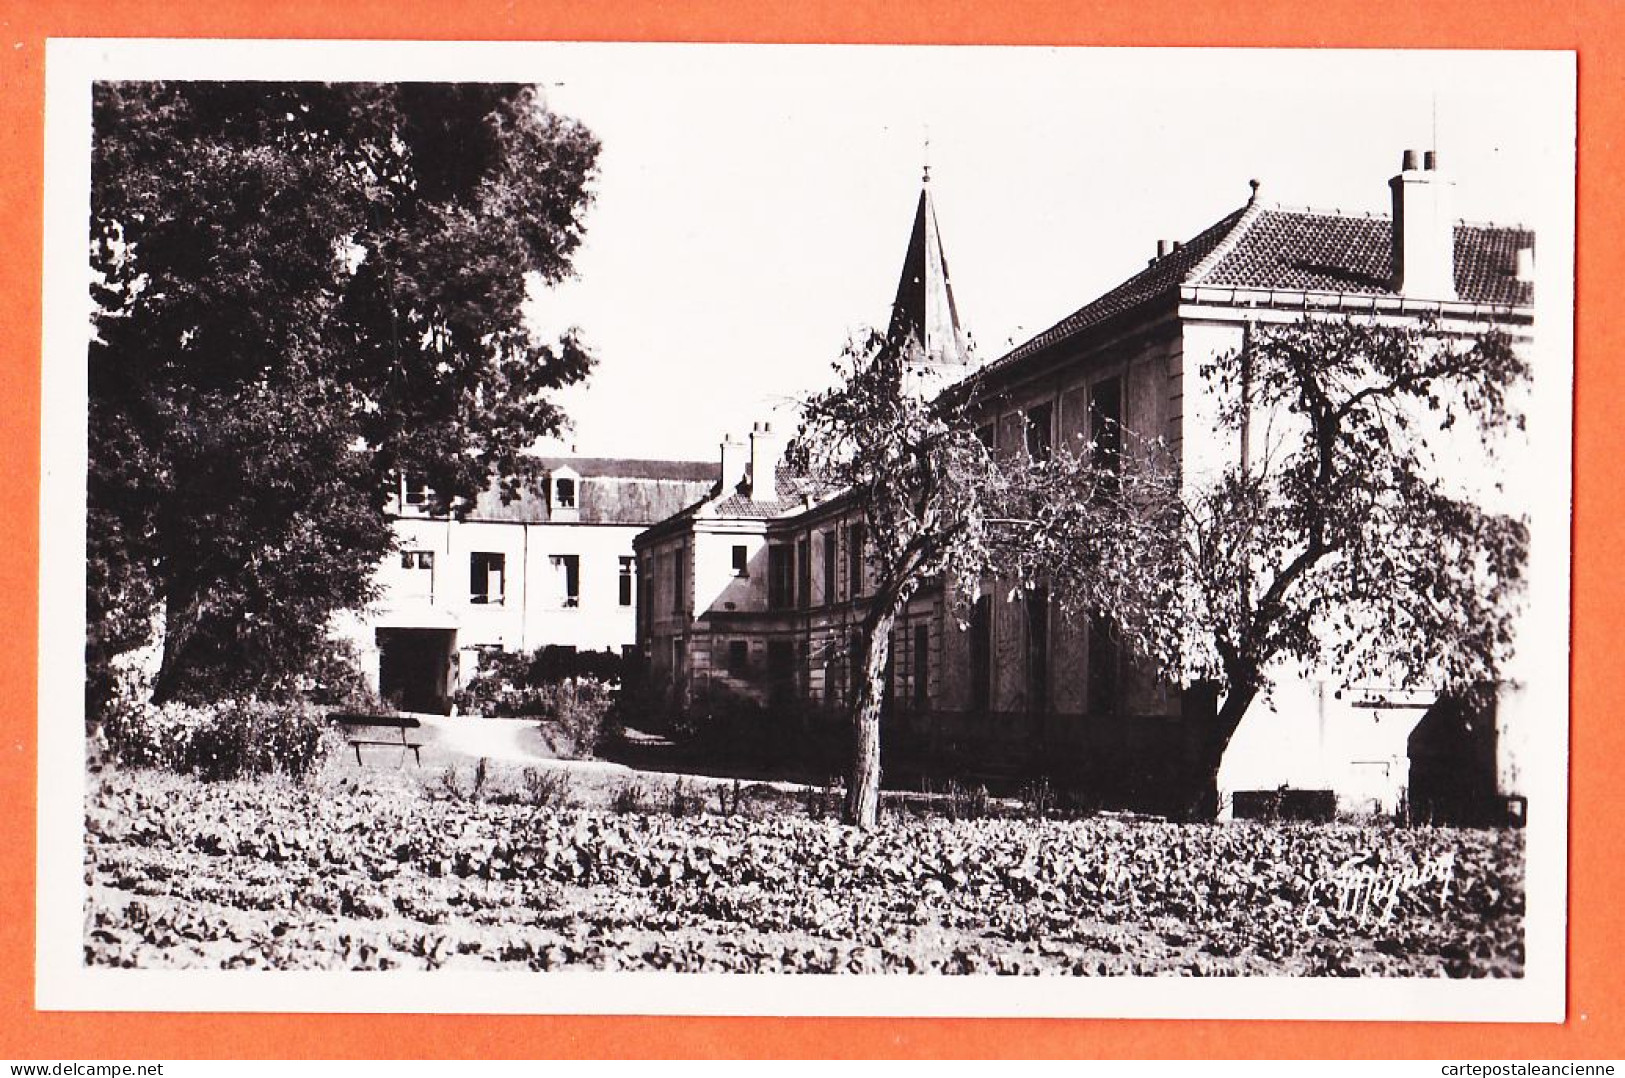 04972 / VILLECRESNES 94-Seine-Oise Maison De Retraite SAINT-PIERRE St 1940s Photo-Bromure MIGNON 3819 - Villecresnes